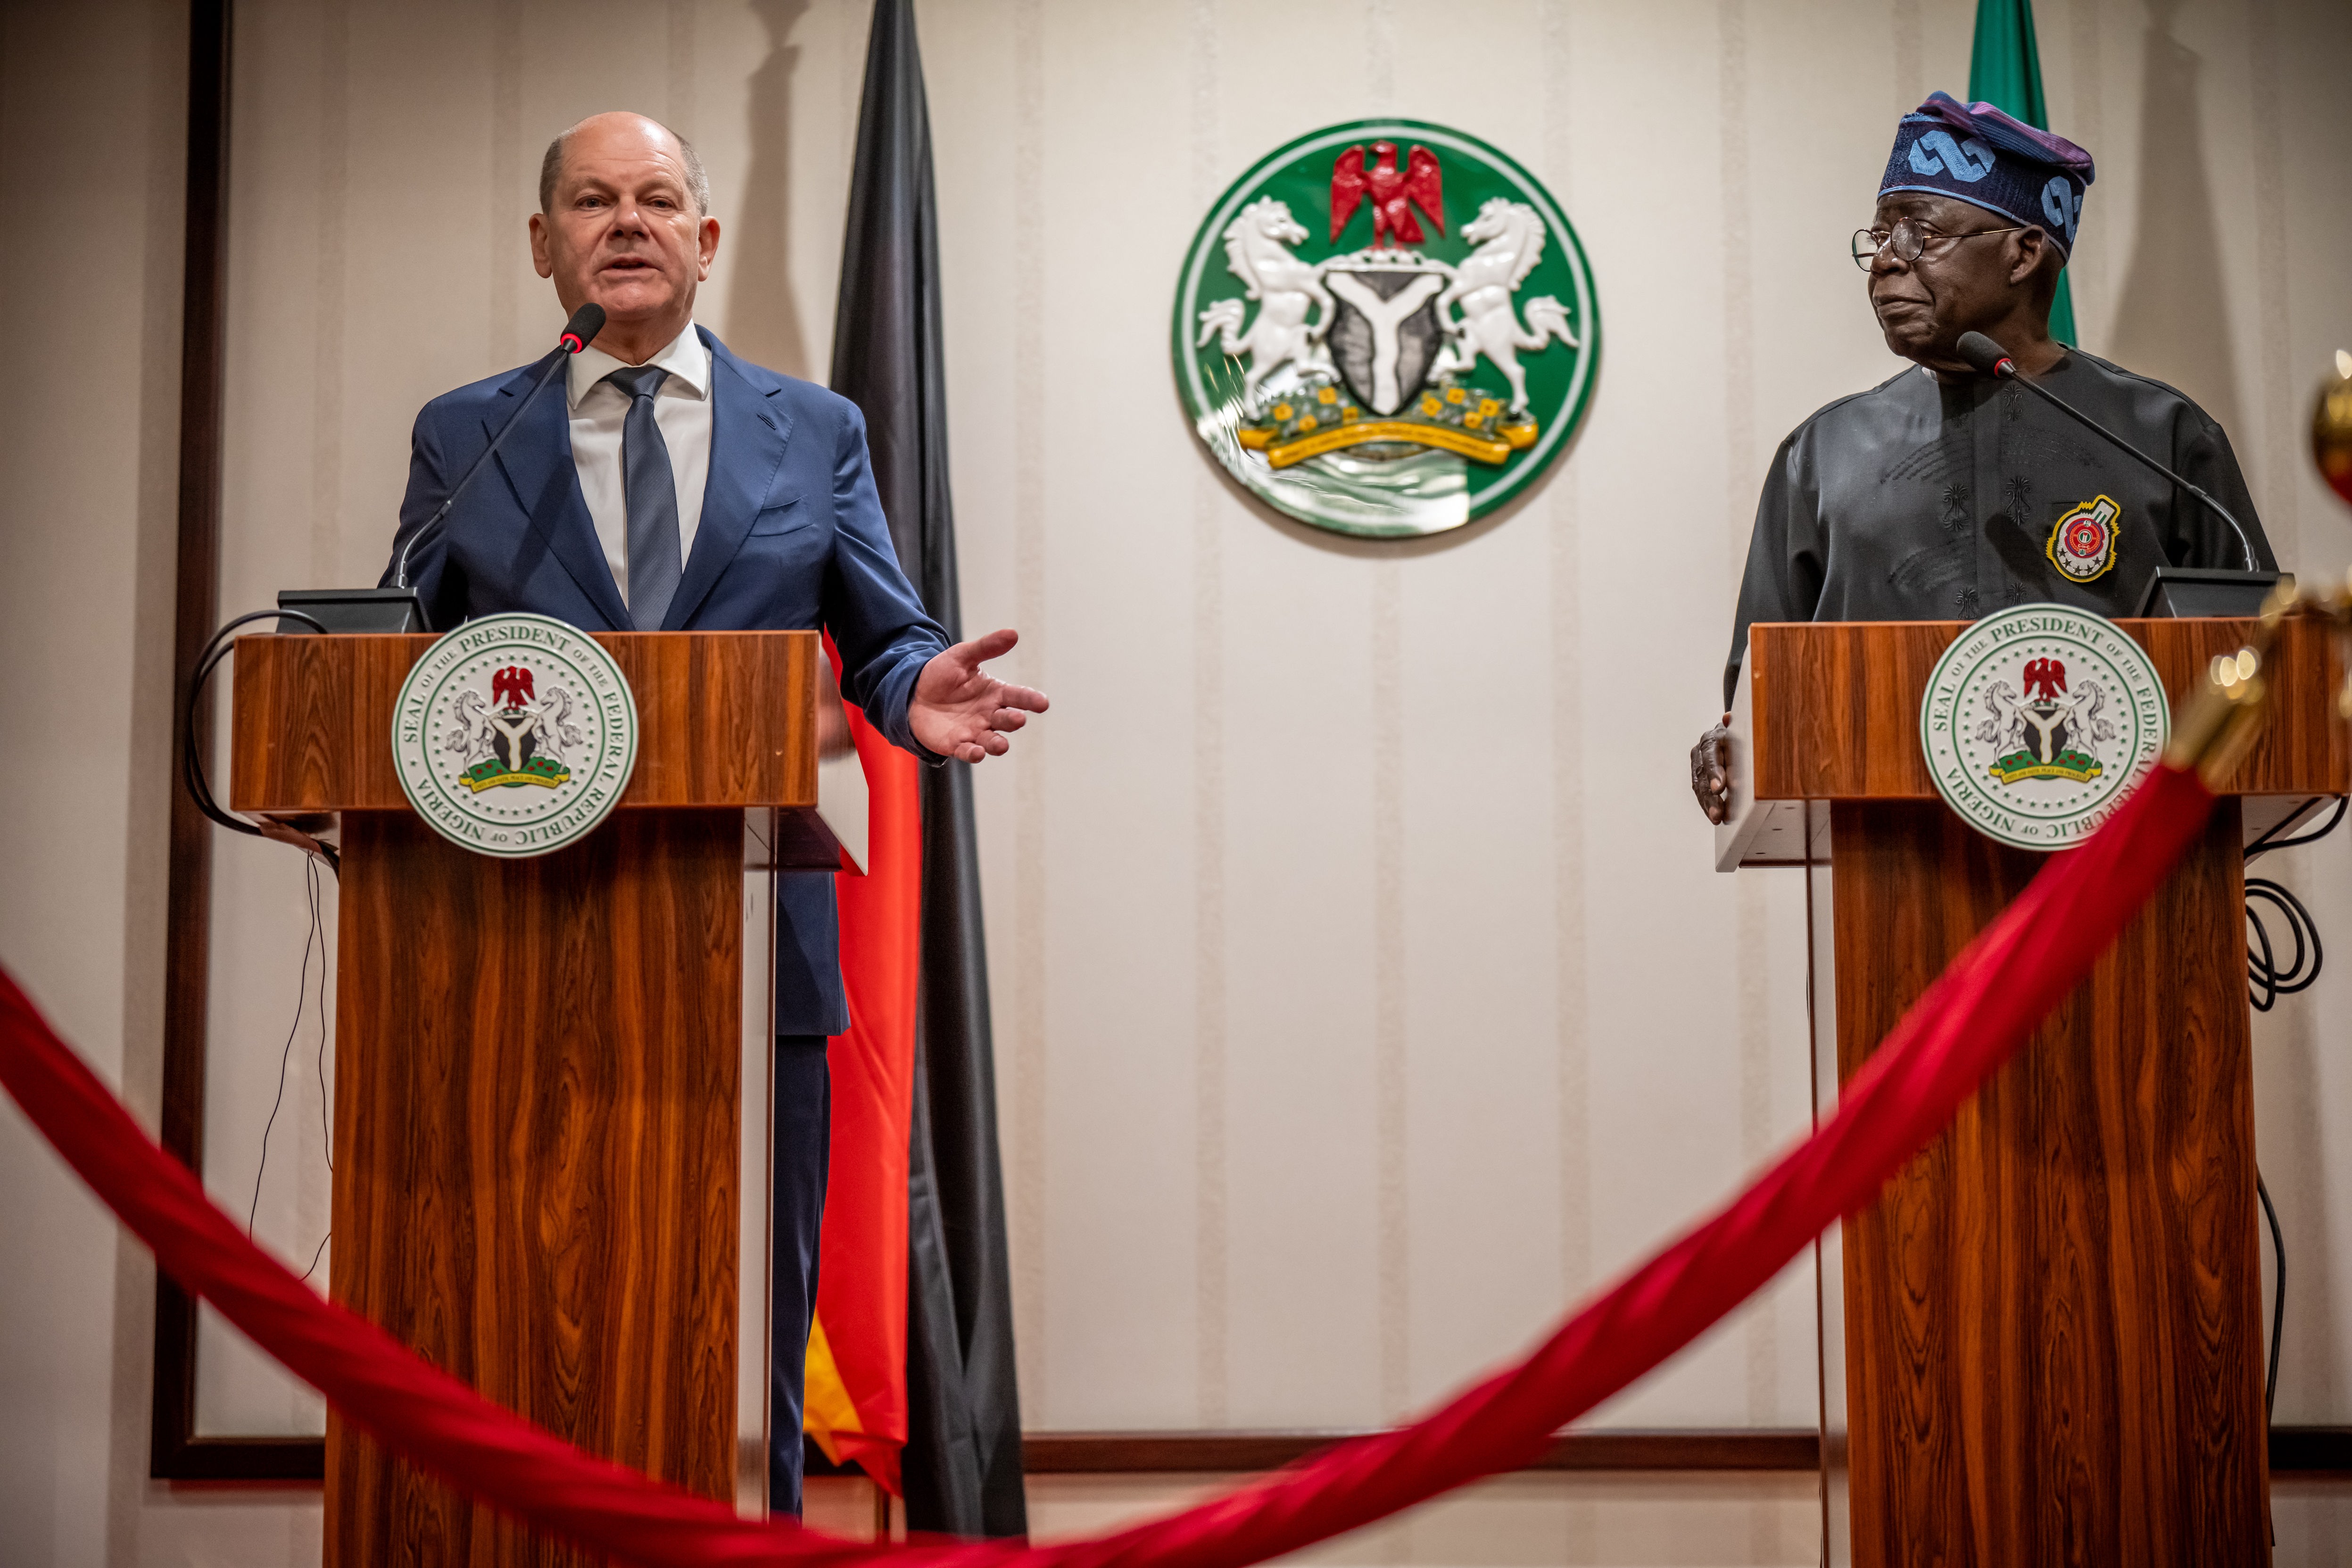 Afrikareise - Bundeskanzler Scholz will Beziehungen mit Nigeria weiter vertiefen